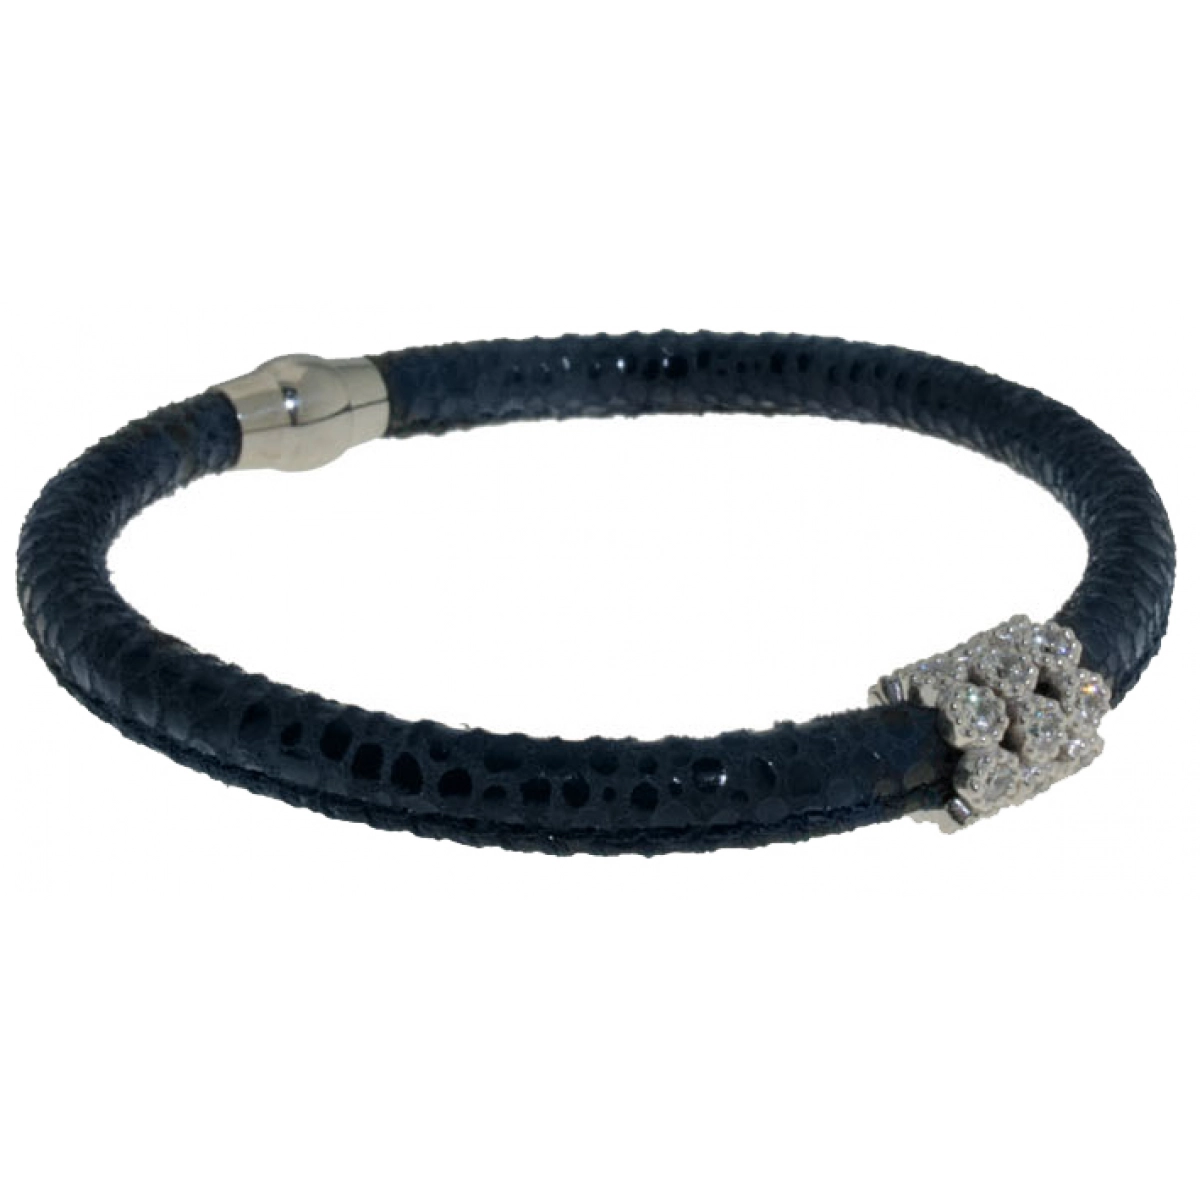 Peau de bracelet bleu avec des pierres BRB47-2 LUCA LORENZINI